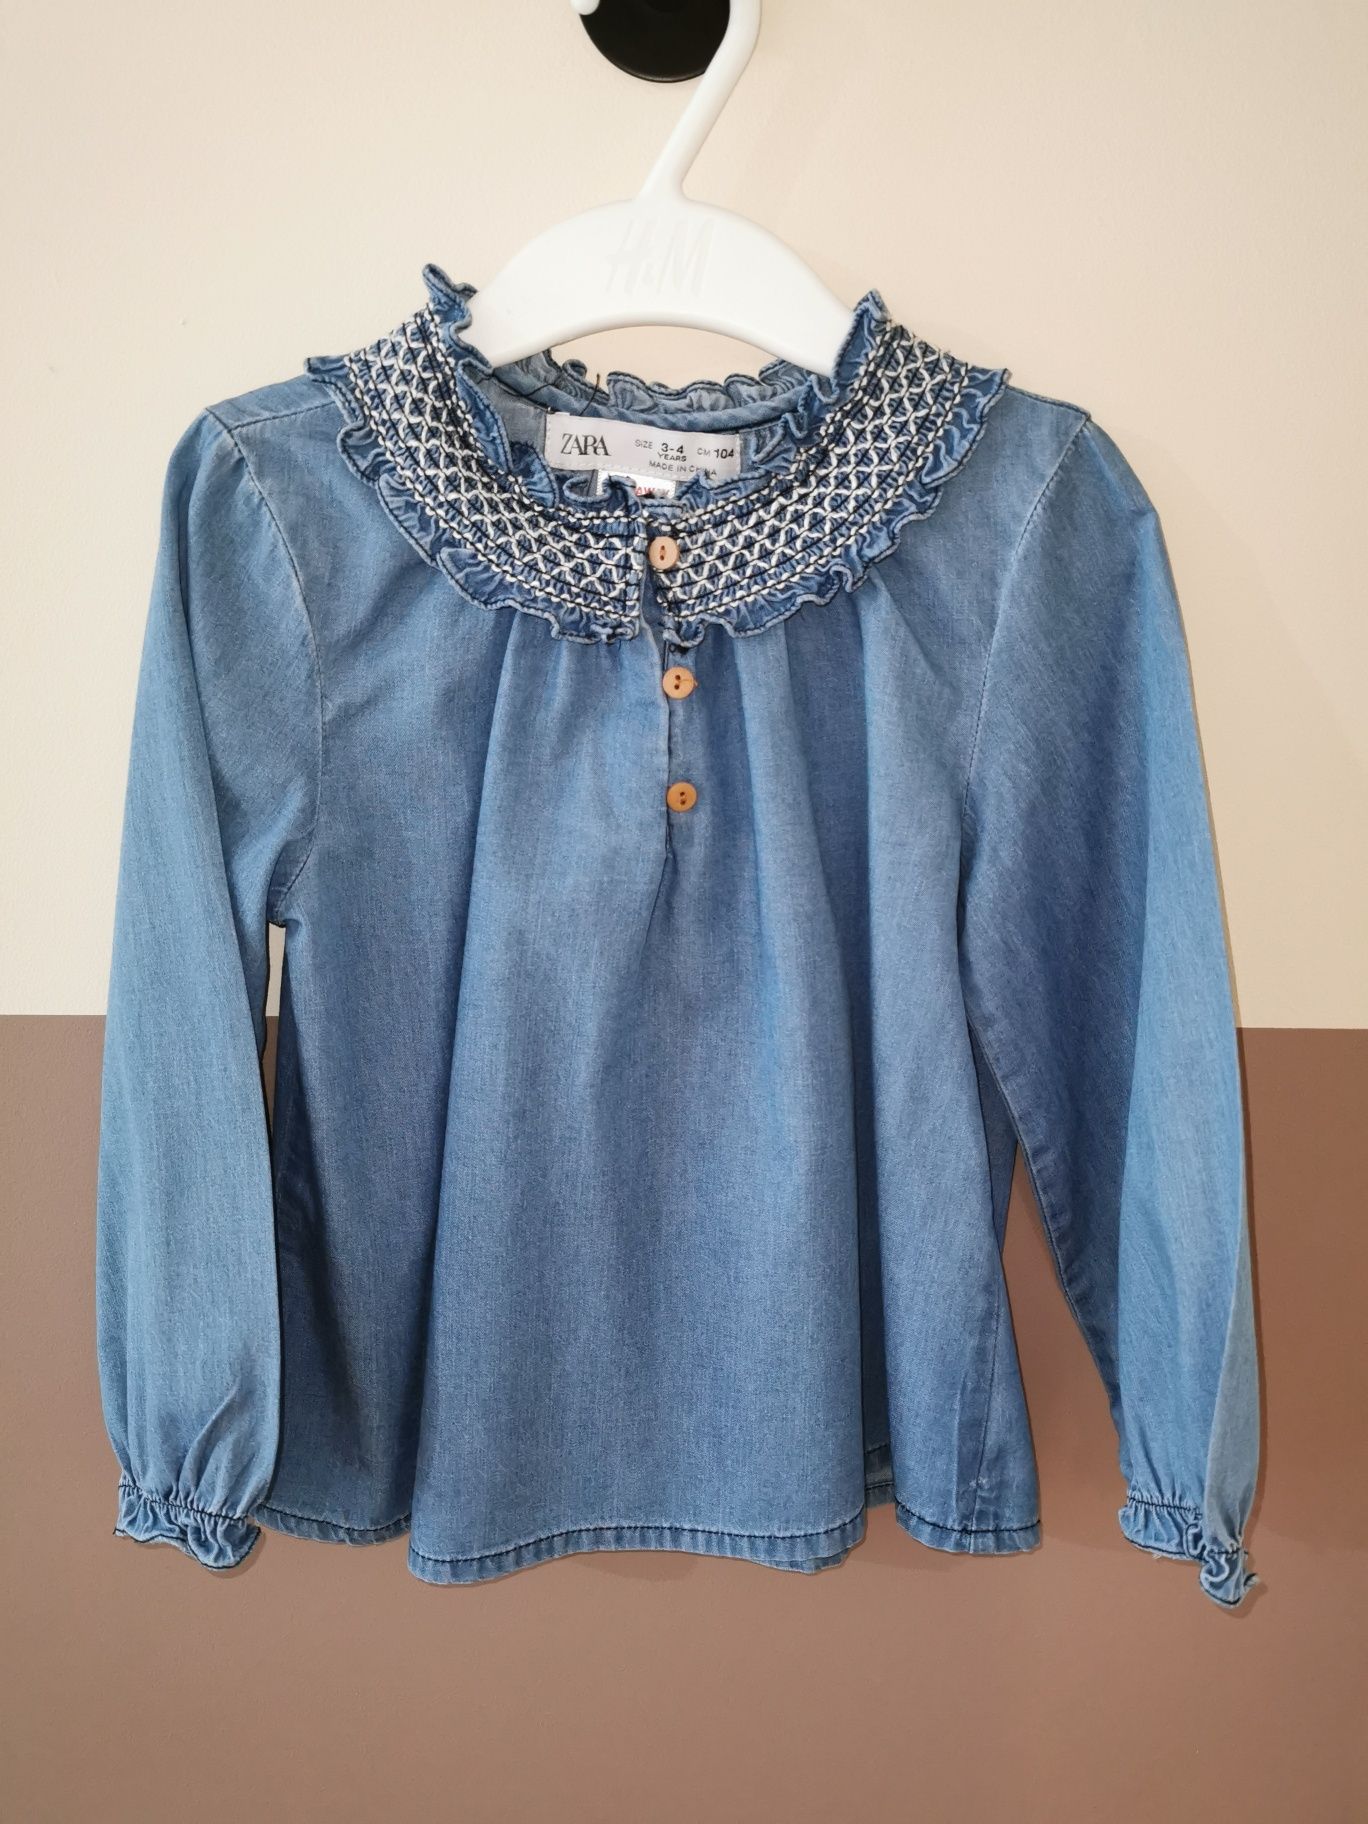 Elegancka bluzka Zara 104